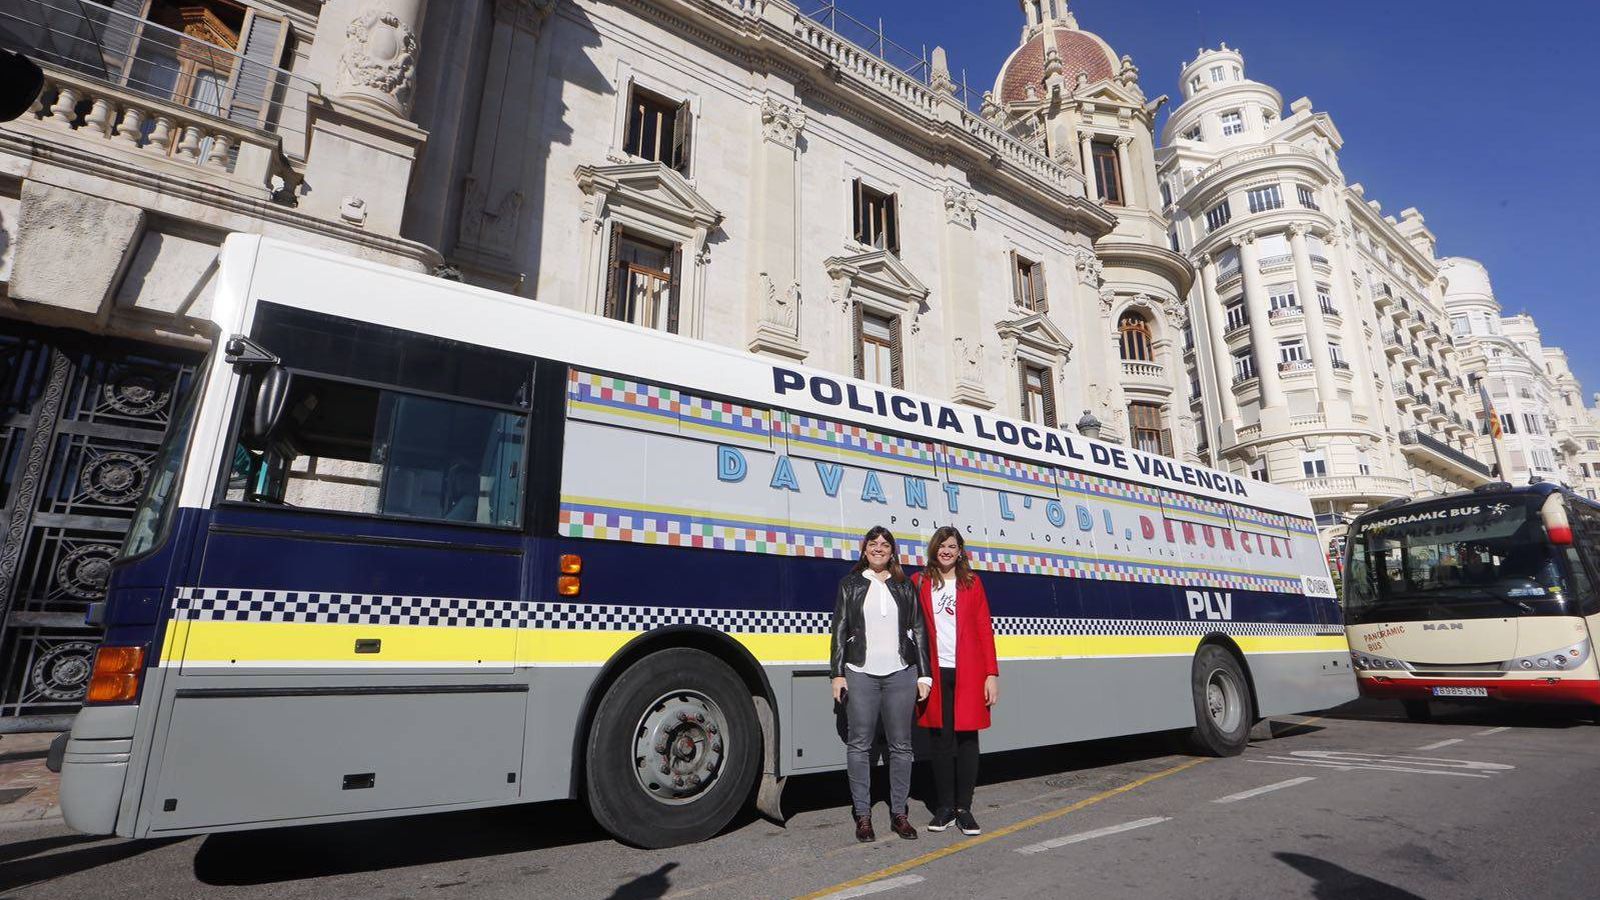 Foto: El autobús de la Policía Local de Valencia que recuerda que se pueden denunciar agresiones homófobas y transfóbicas.